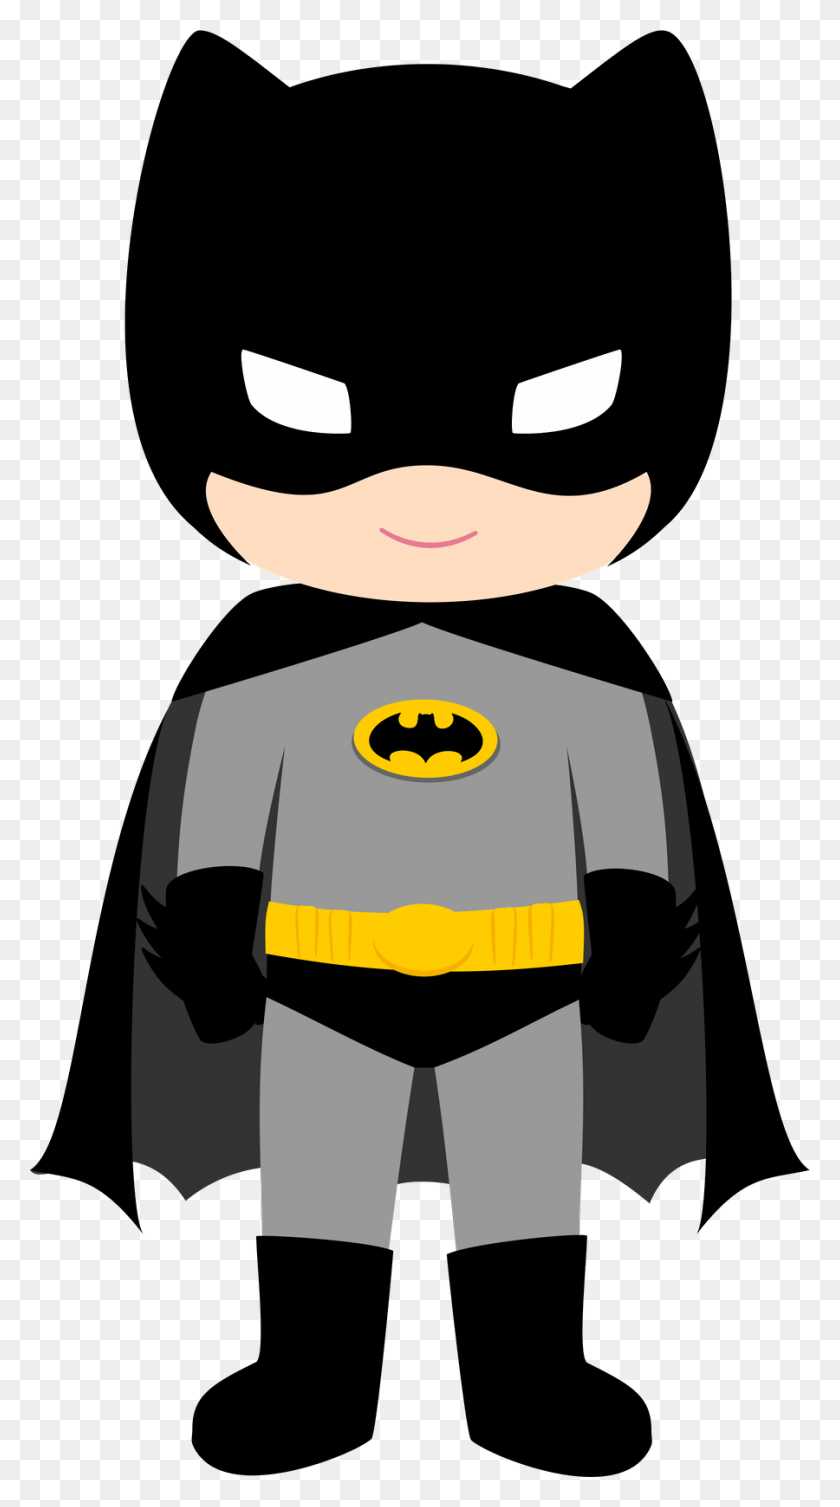 900x1670 Máscara De Batman Png Disfraz De Batman Batman Bebé, Logotipo De Batman, Símbolo, Pac Man Hd Png